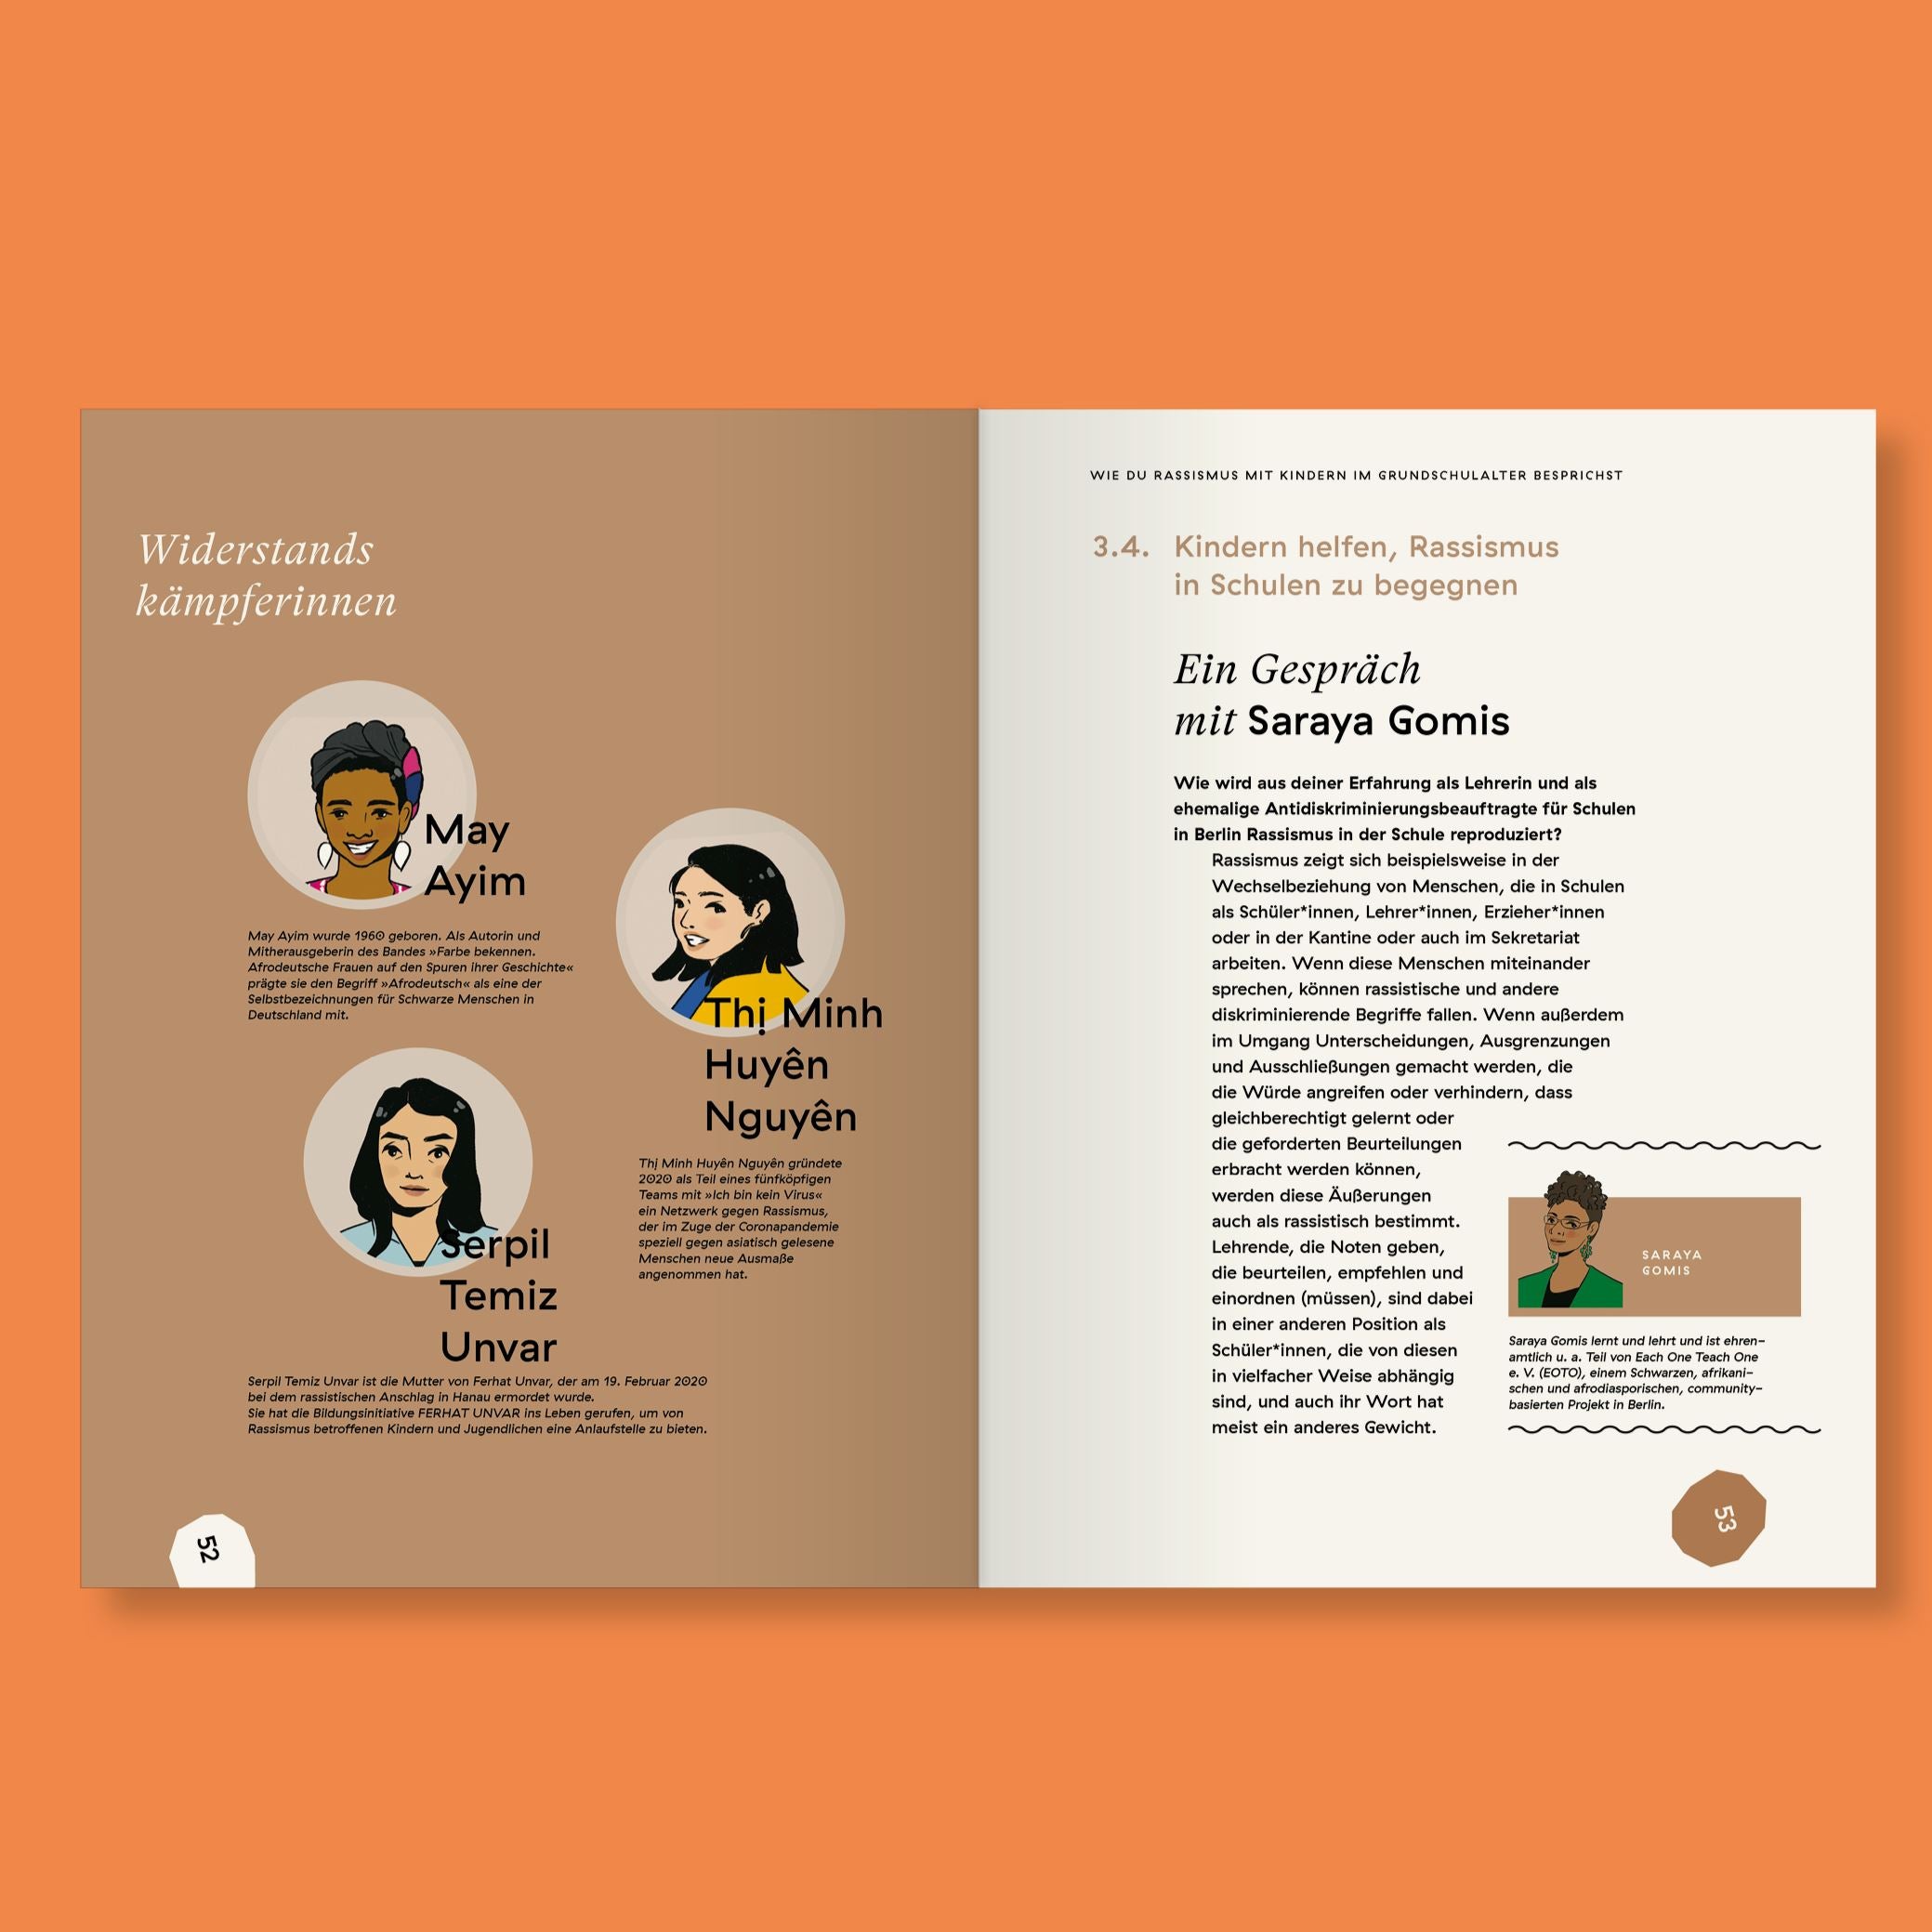 Buch familiarfaces "Wie erkläre ich Kindern Rassismus" Buch Familiar Faces Verlag 